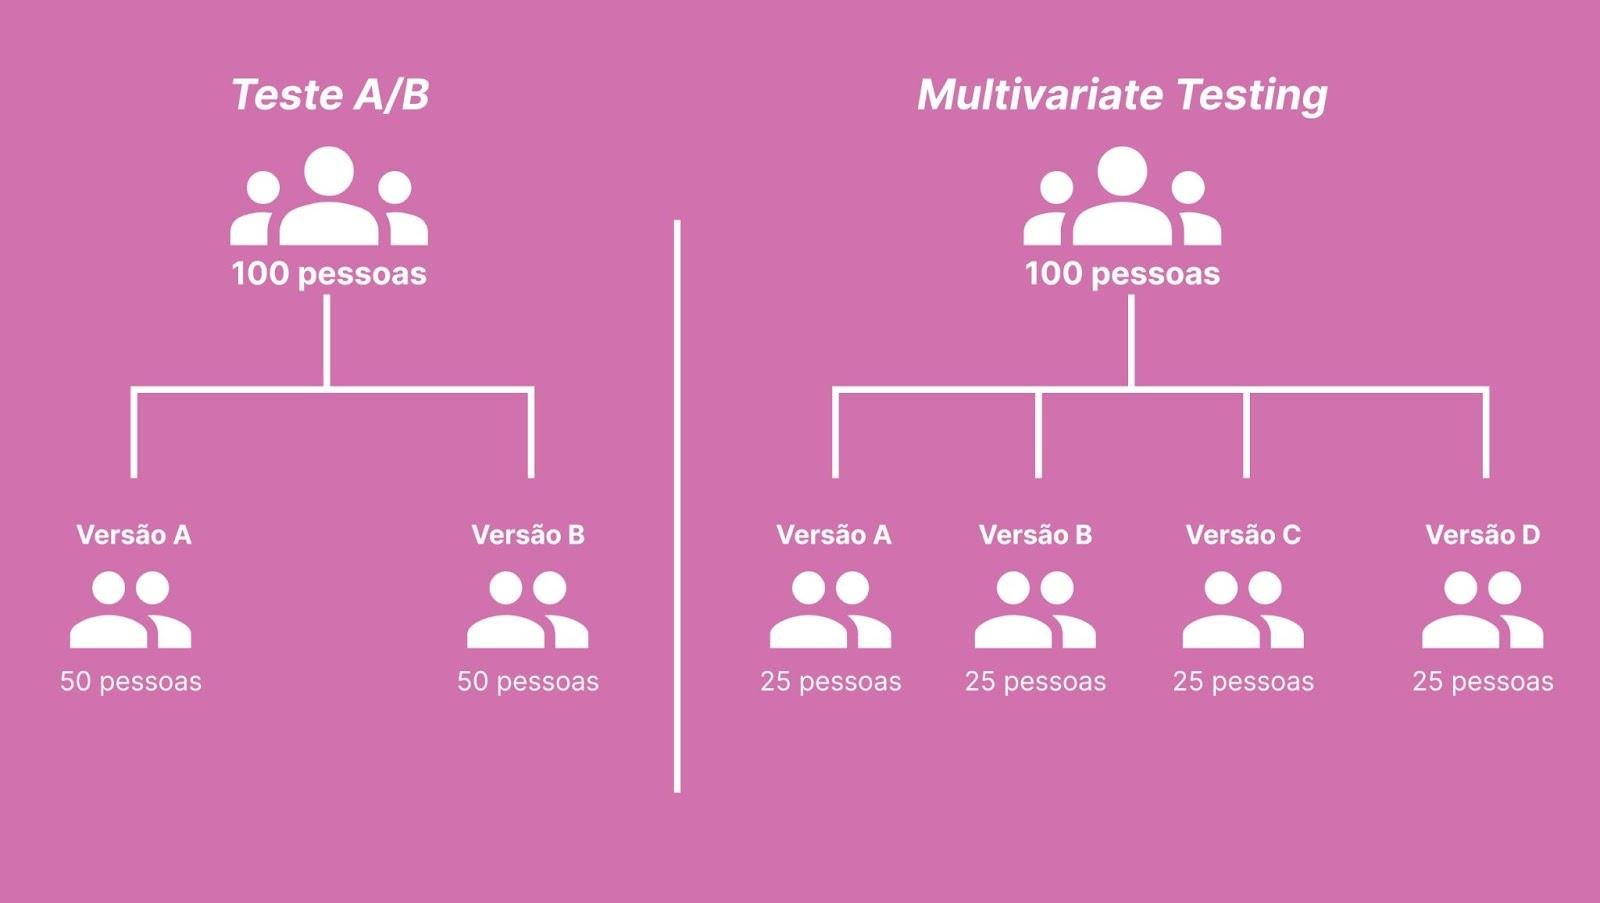 Ilustração comparando a divisão de grupos que aconteceria no Teste A/B e como seria a separação da mesma quantidade de pessoas no Multivariate Testing.